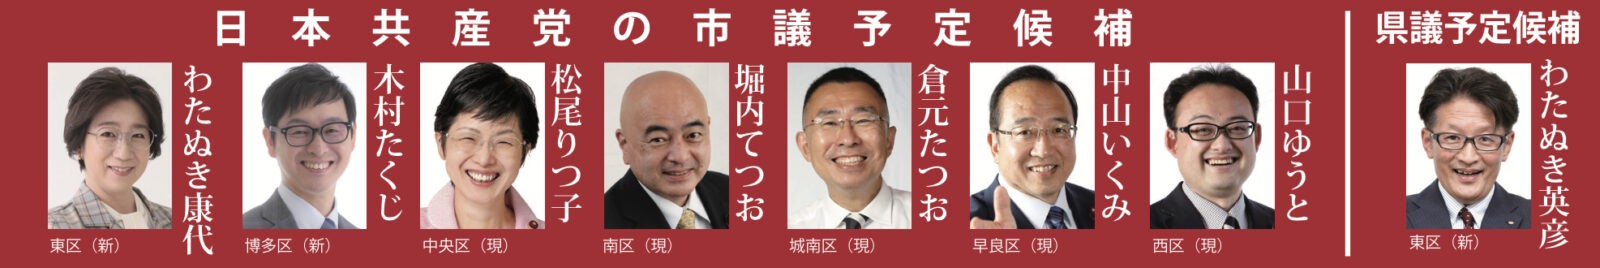 日本共産党 市議・県議予定候補